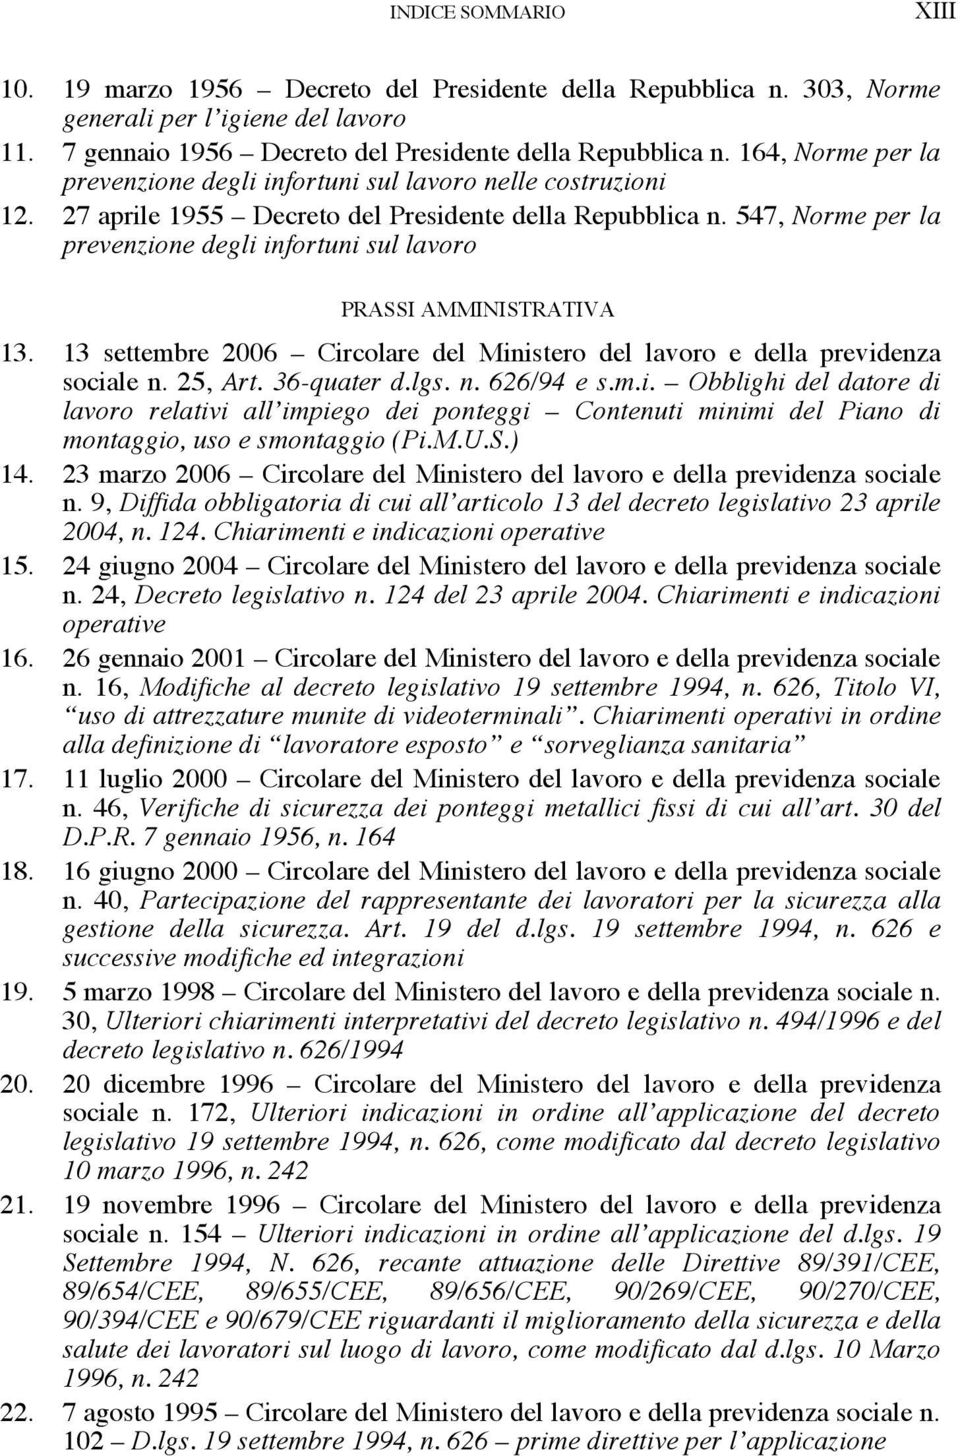 547, Norme per la prevenzione degli infortuni sul lavoro PRASSI AMMINISTRATIVA 13. 13 settembre 2006 Circolare del Ministero del lavoro e della previdenza sociale n. 25, Art. 36-quater d.lgs. n. 626/94 e s.